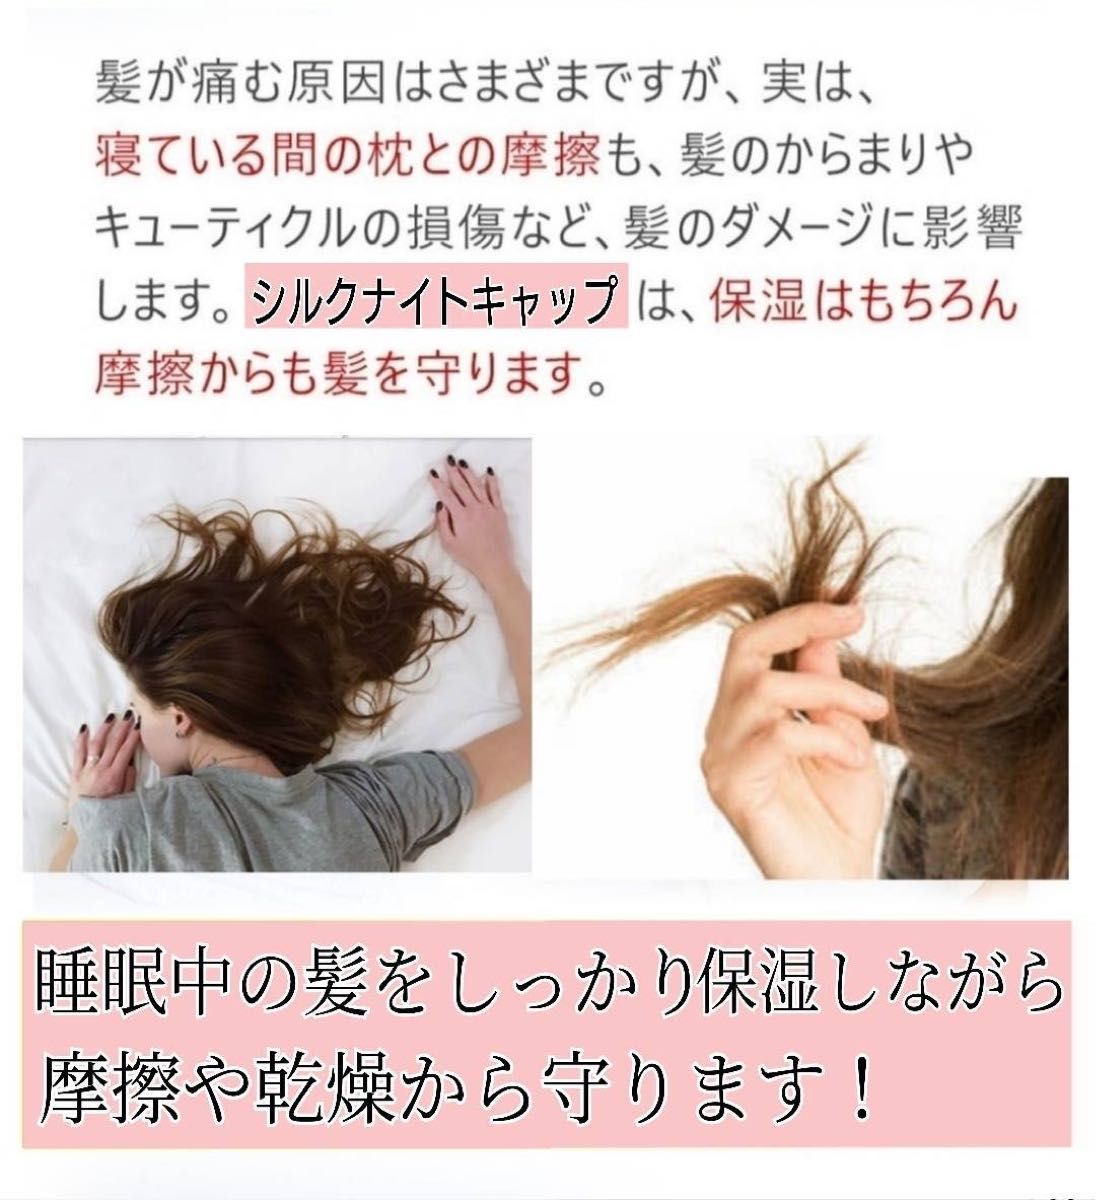 ナイトキャップ シルク100% ヘアケア ロングヘア 美髪 ツヤ髪 傷み防止 寝癖対策 フリーサイズ ピンク